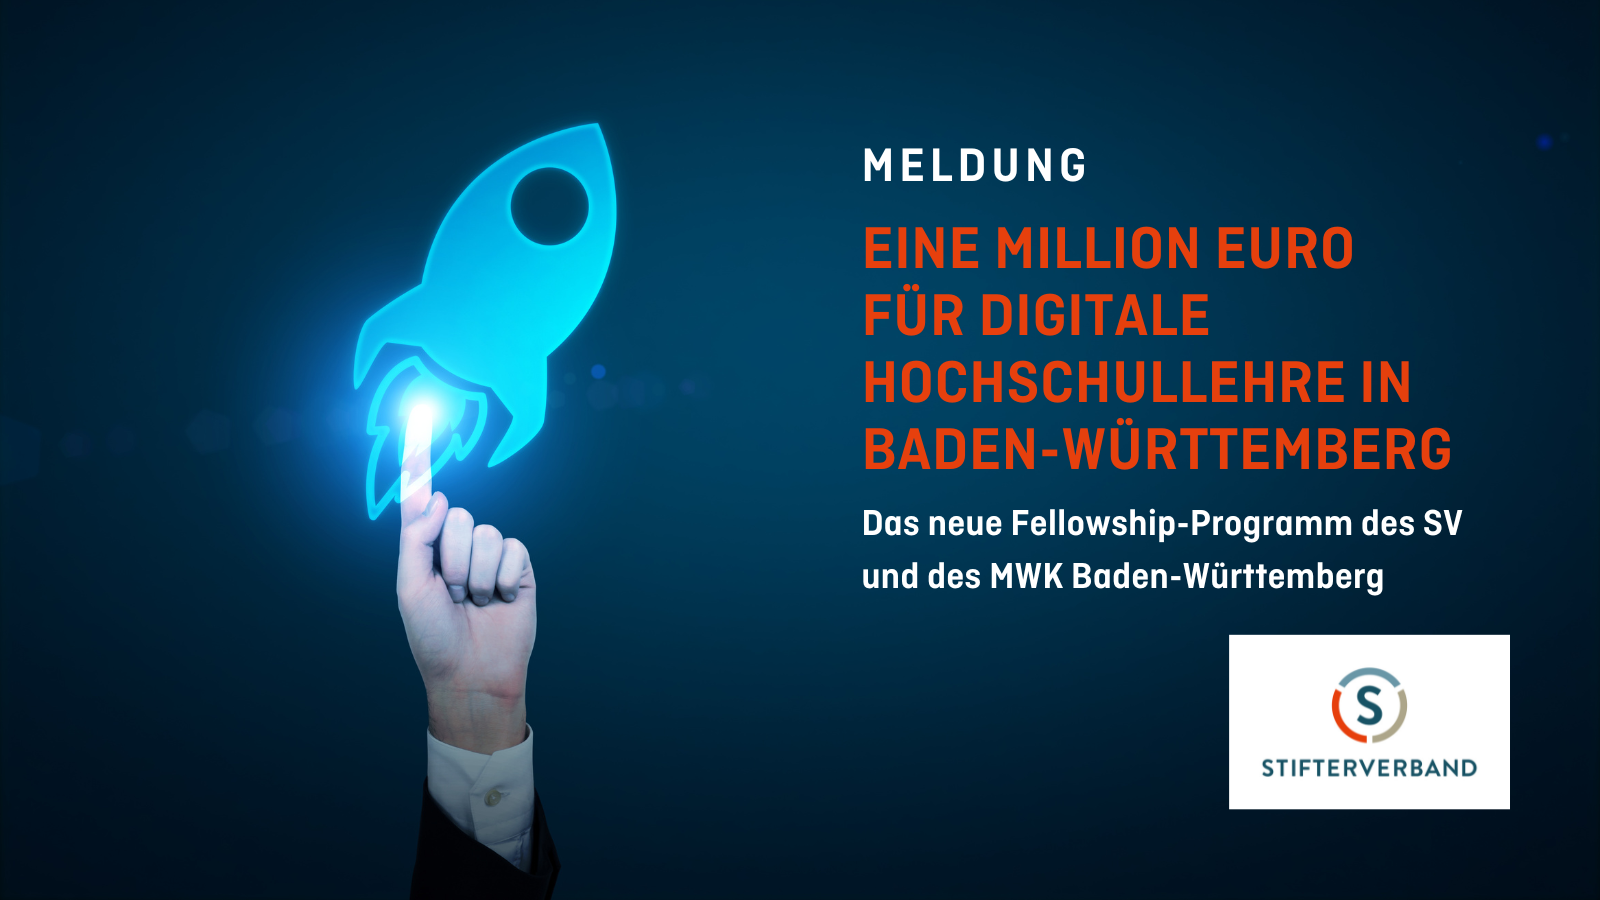 Auf dunkelblauem Hintergrund steht "Meldung. Eine Million für Digitale Hochschullehre in Baden-Württemberg. Das neue Fellowship-Programm des SV und des MWK Baden-Württemberg. Bewerbungsschluss 31.10.2022"; Unten rechts befindet sich das SV-Logo und auf der linken Seite ist ein Bild von einer Hand die auf eine Skizze einer Rakete zeigt.